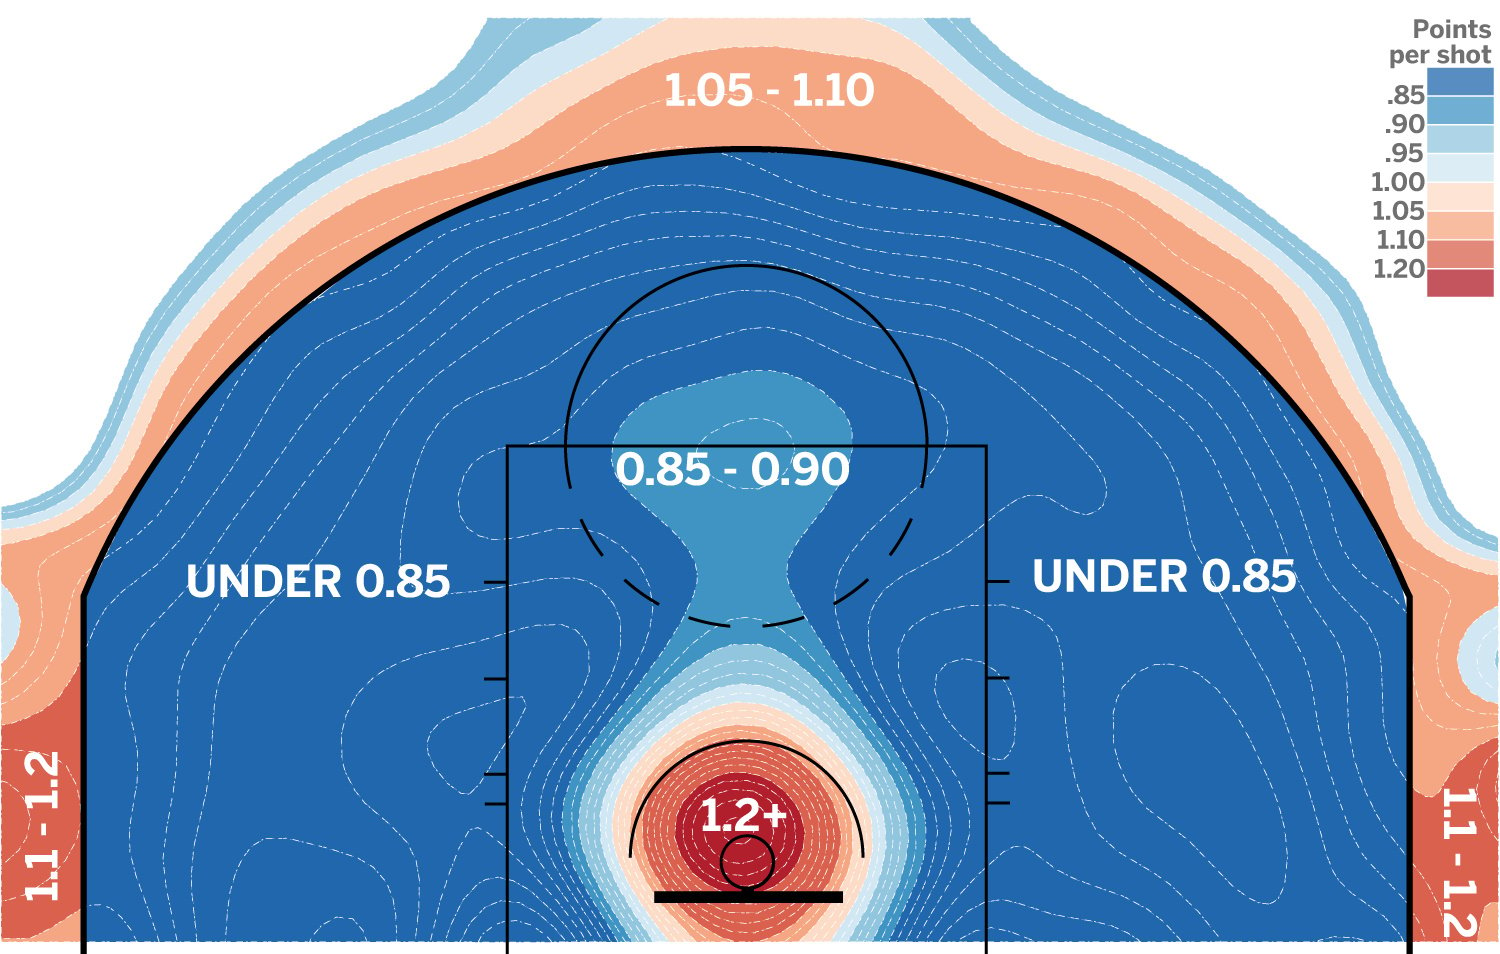 Illustration: Punkteausbeute beim Basketball in Abhängigkeit von der Wurfposition des Spielers